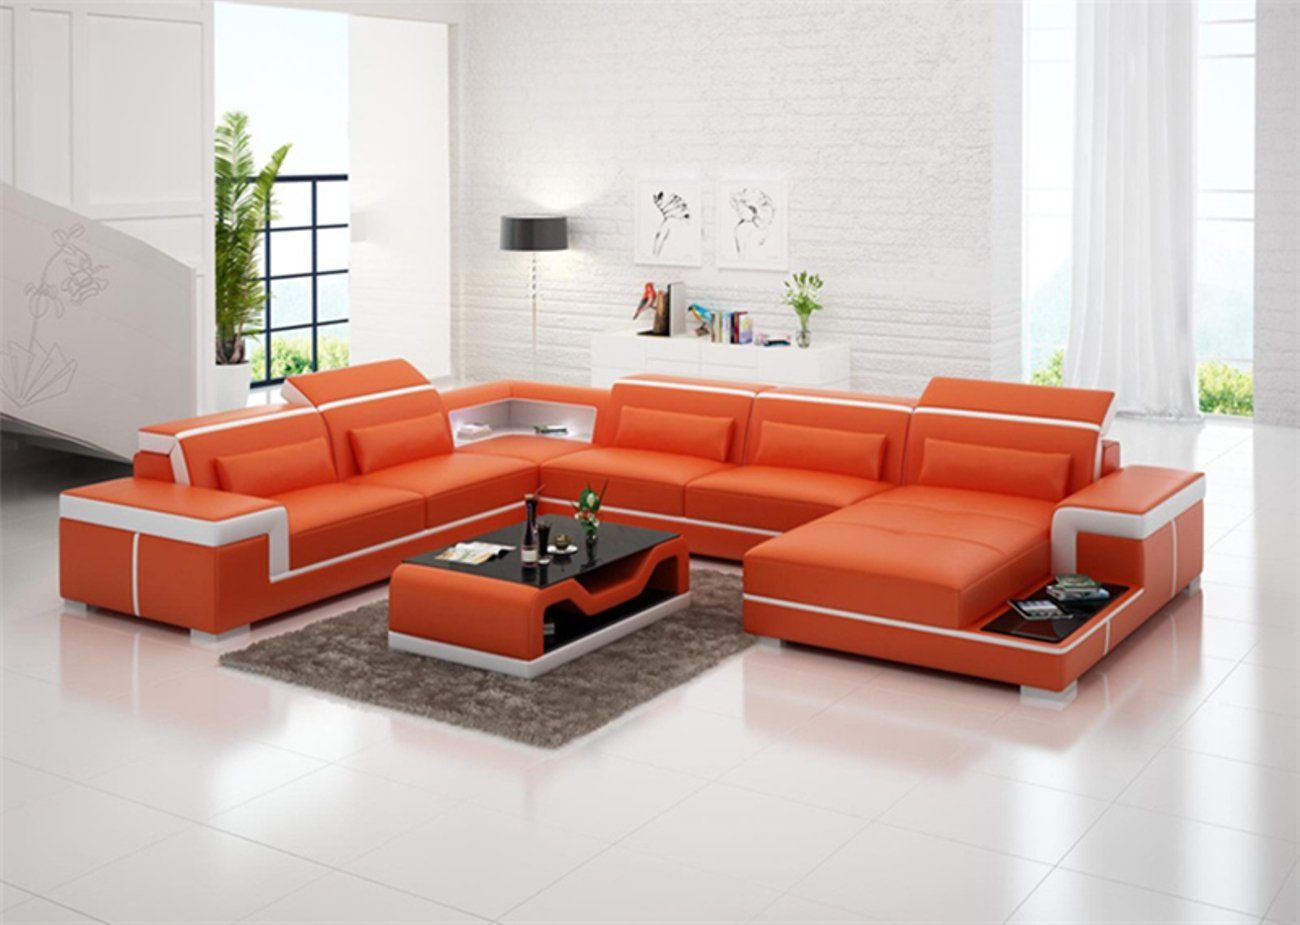 JVmoebel Ecksofa Sofas U Form Sofa Couch Polster Garnitur Wohnlandschaft Design, Made in Europe Orange